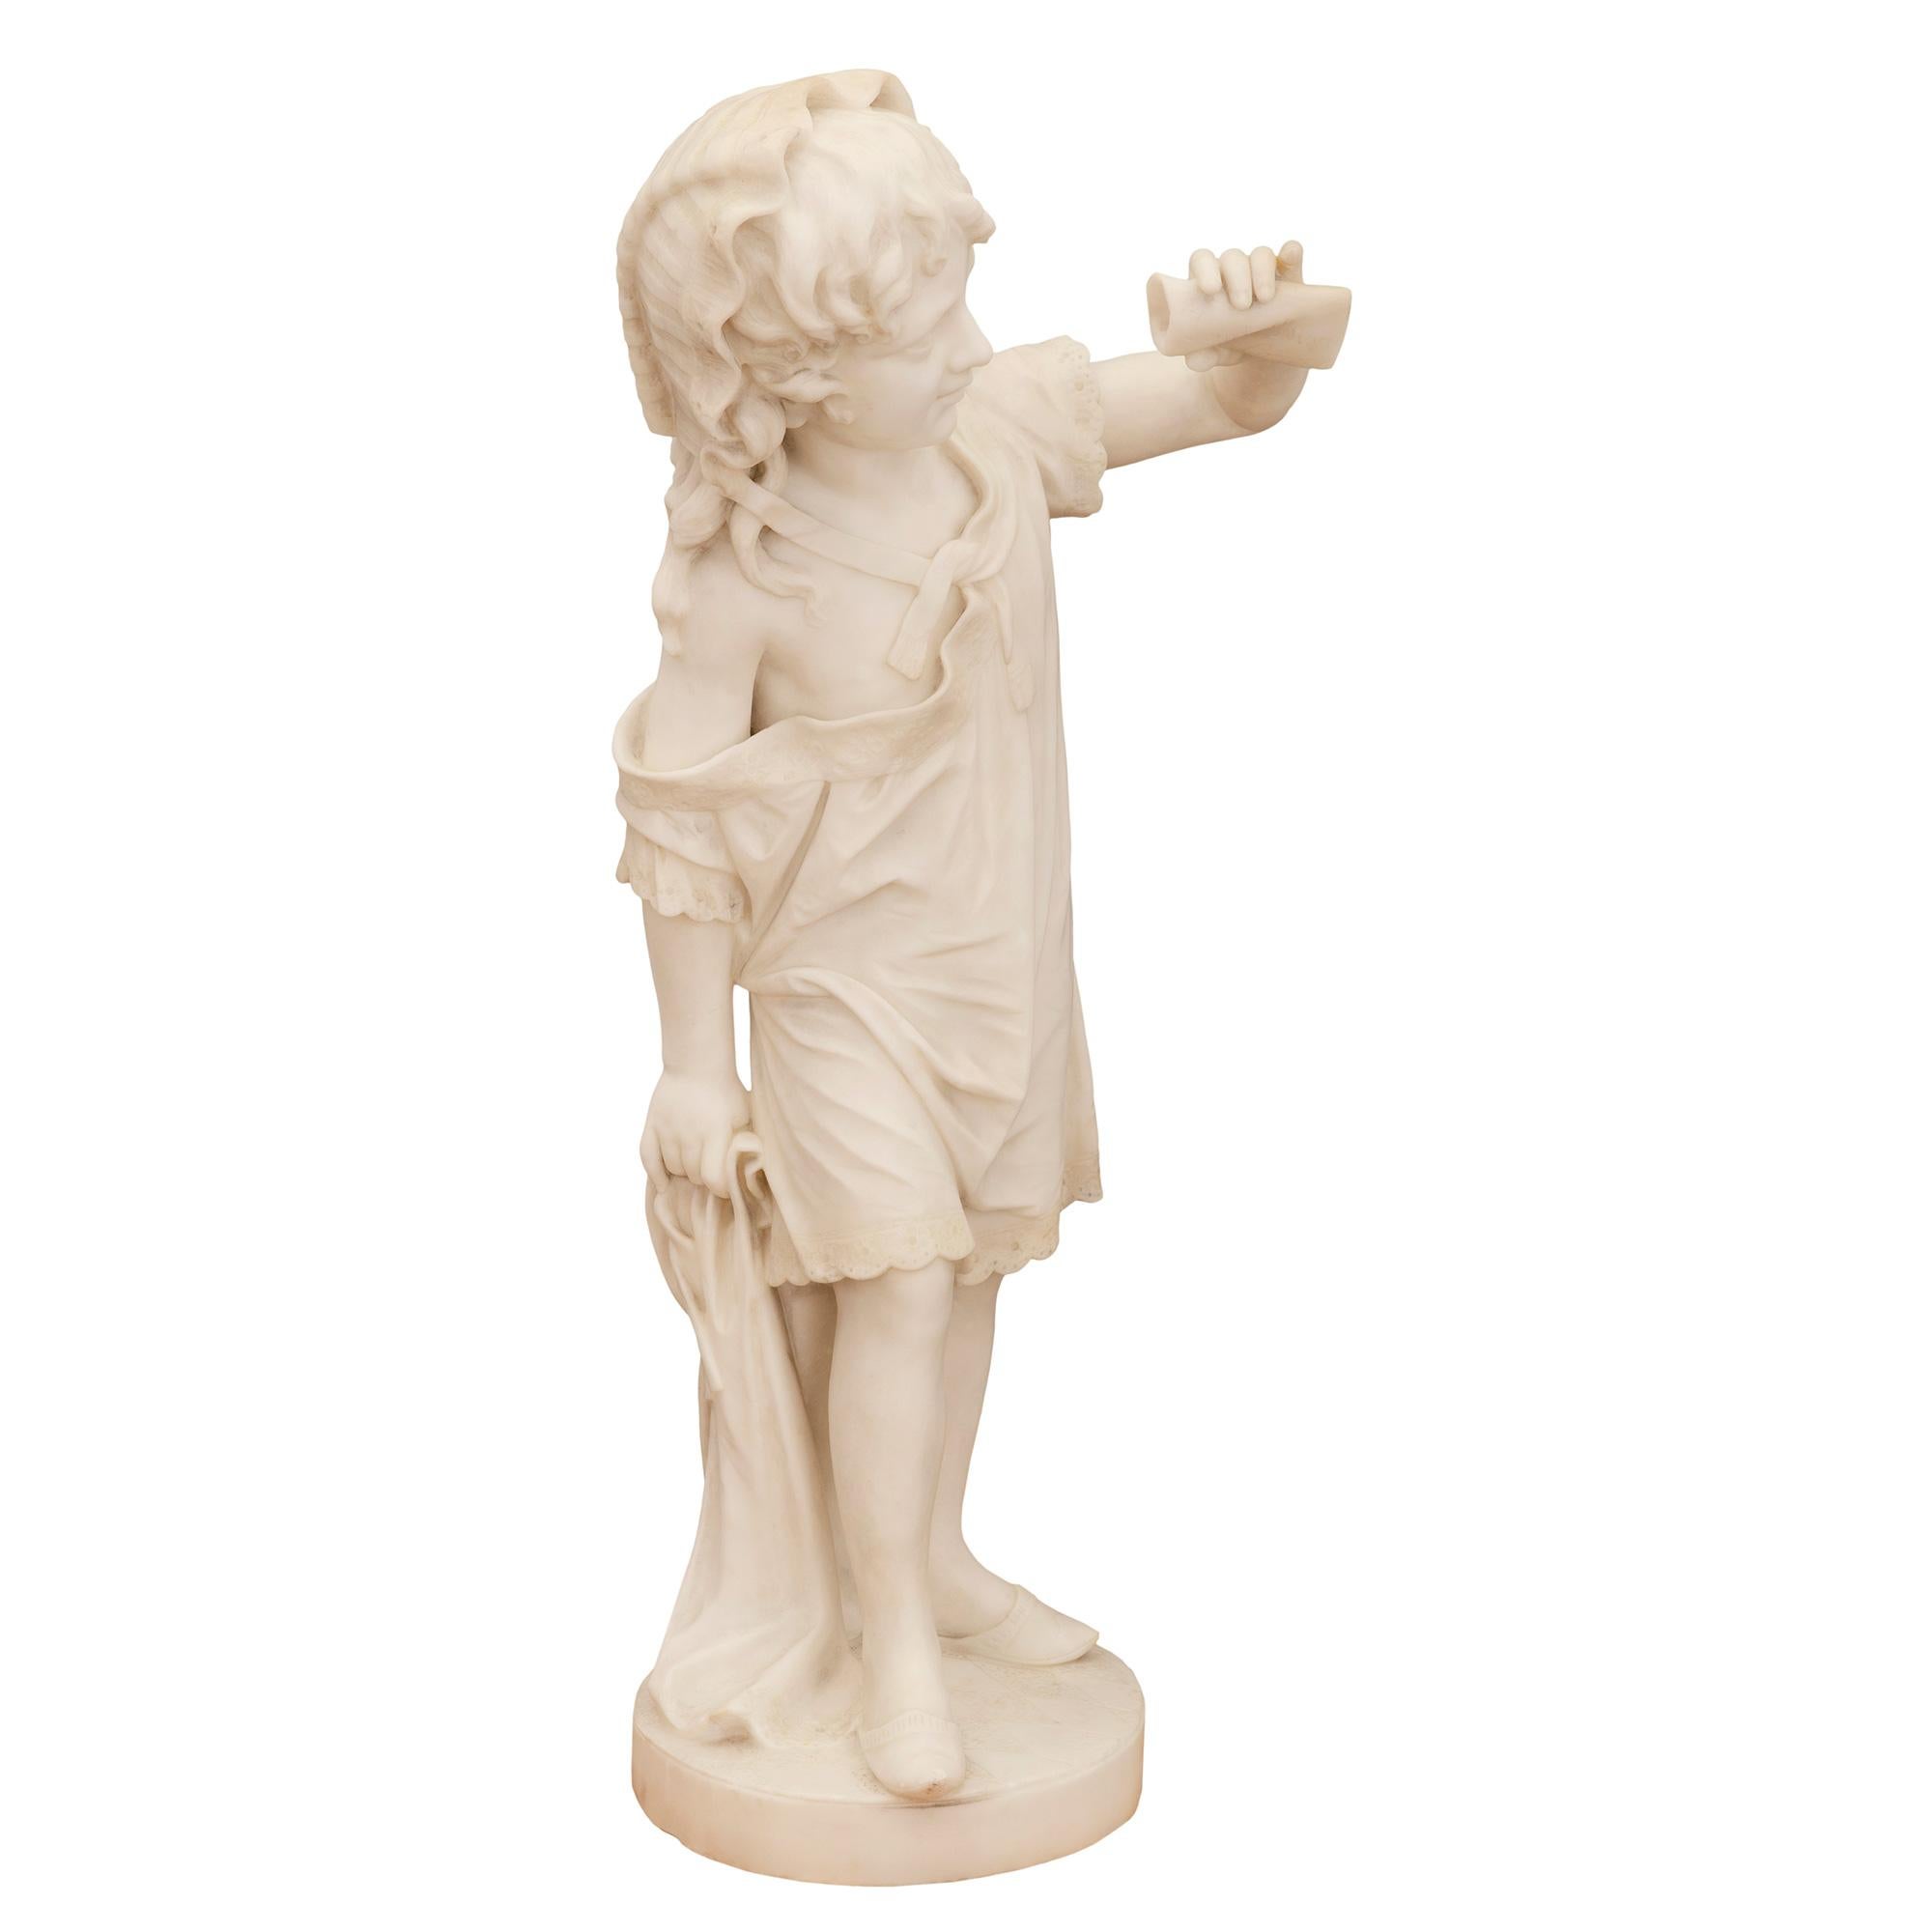 Charmante statue en marbre blanc de Carrare du 19e siècle, de grande qualité, représentant une jeune fille tenant un parchemin. La statue est surélevée par une base circulaire dont le sol est finement sculpté en forme de diamant. L'adorable jeune